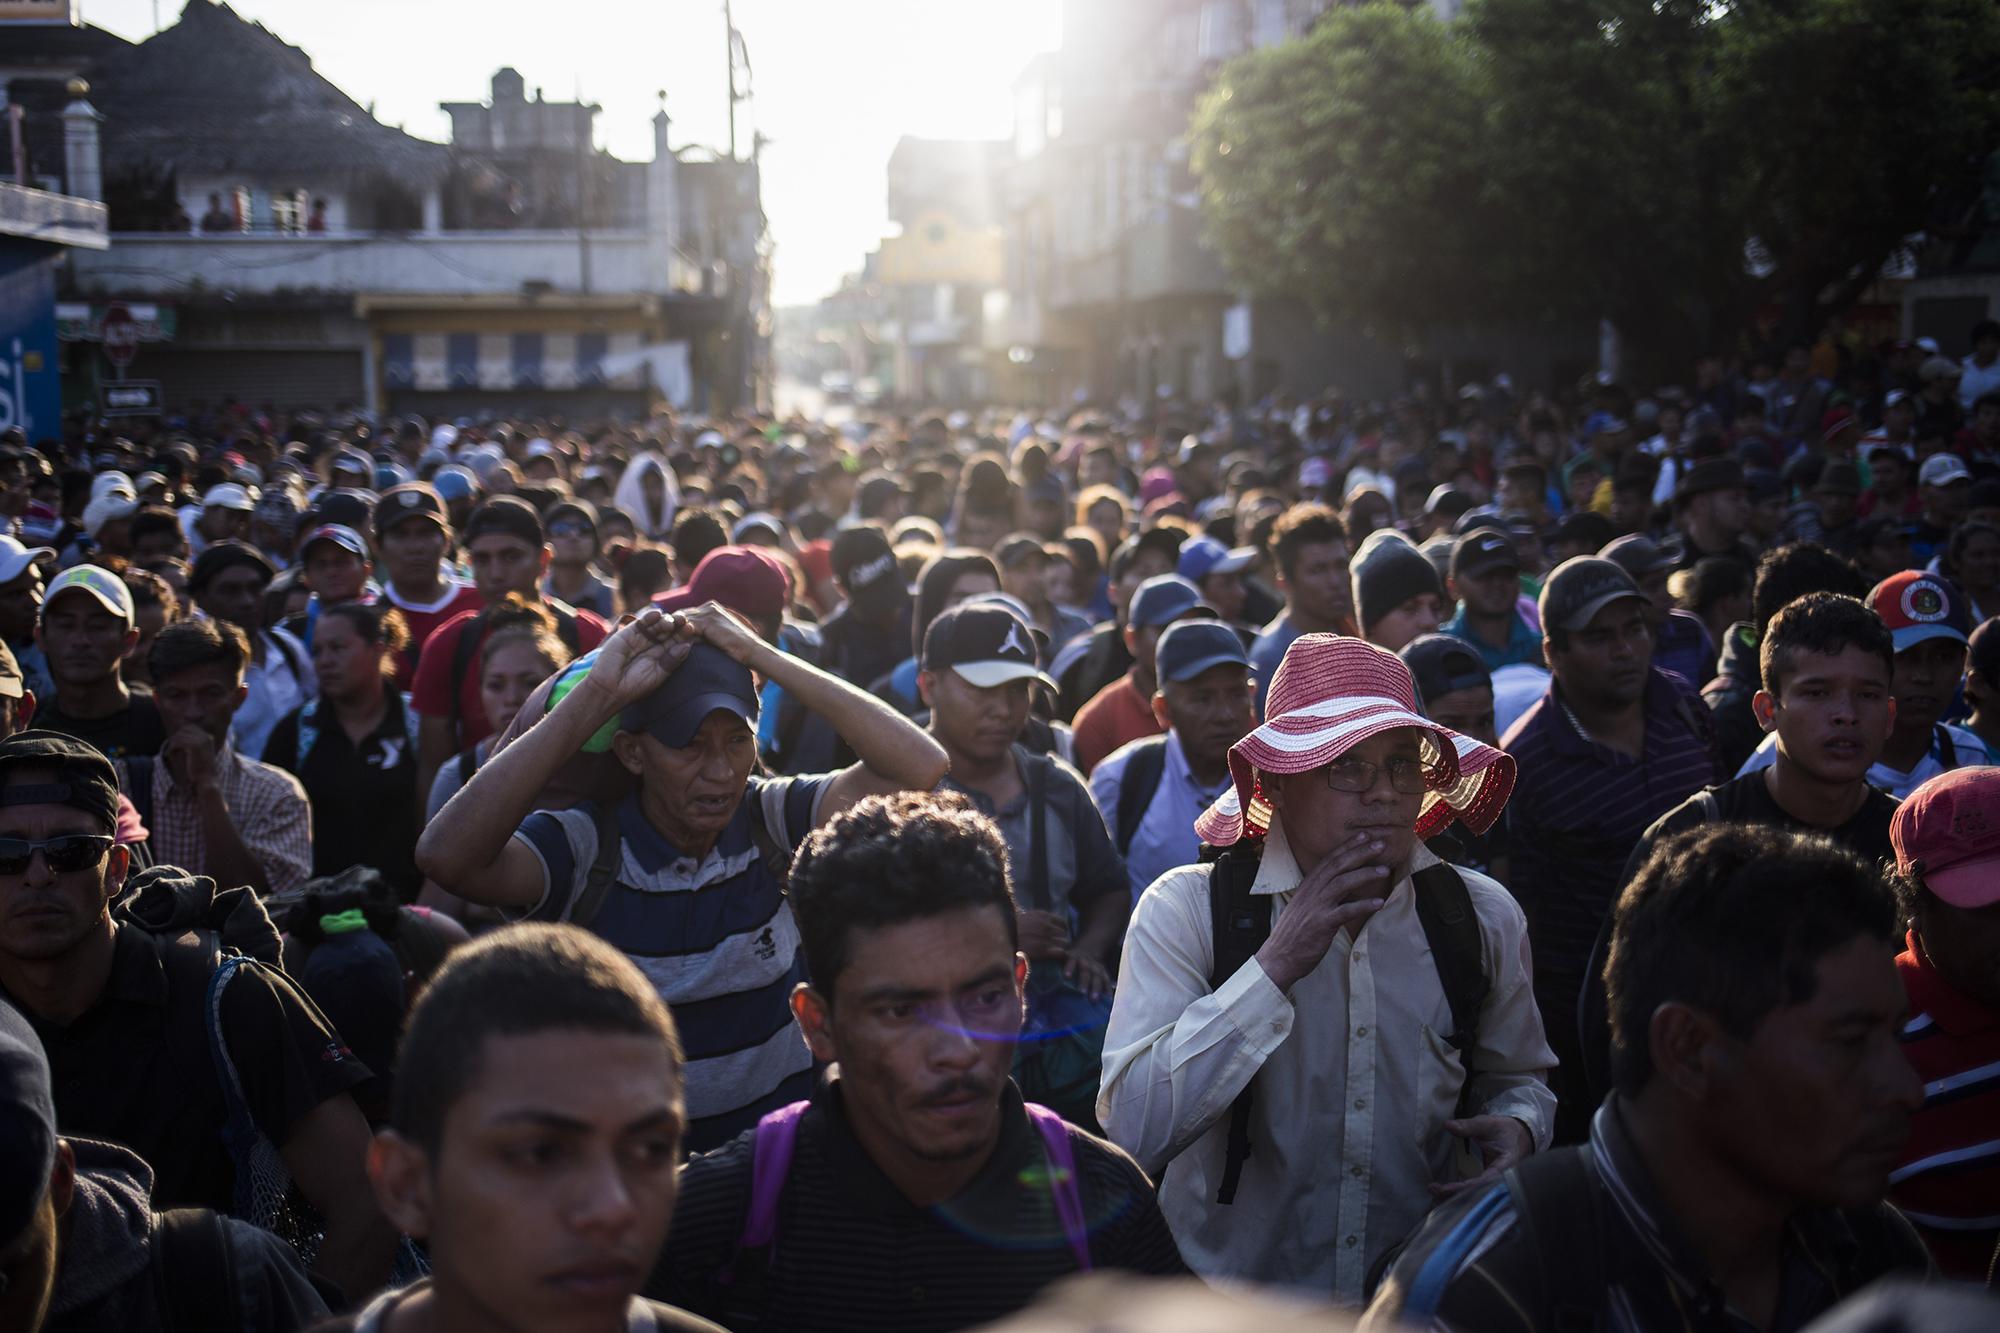 La caravana de migrantes espera frente al portón de la aduana guatemalteca, en el paso de la frontera Tecún Umán. Unas 2 mil personas llegaron a este lugar para cruzar a México. Foto: Víctor Peña.